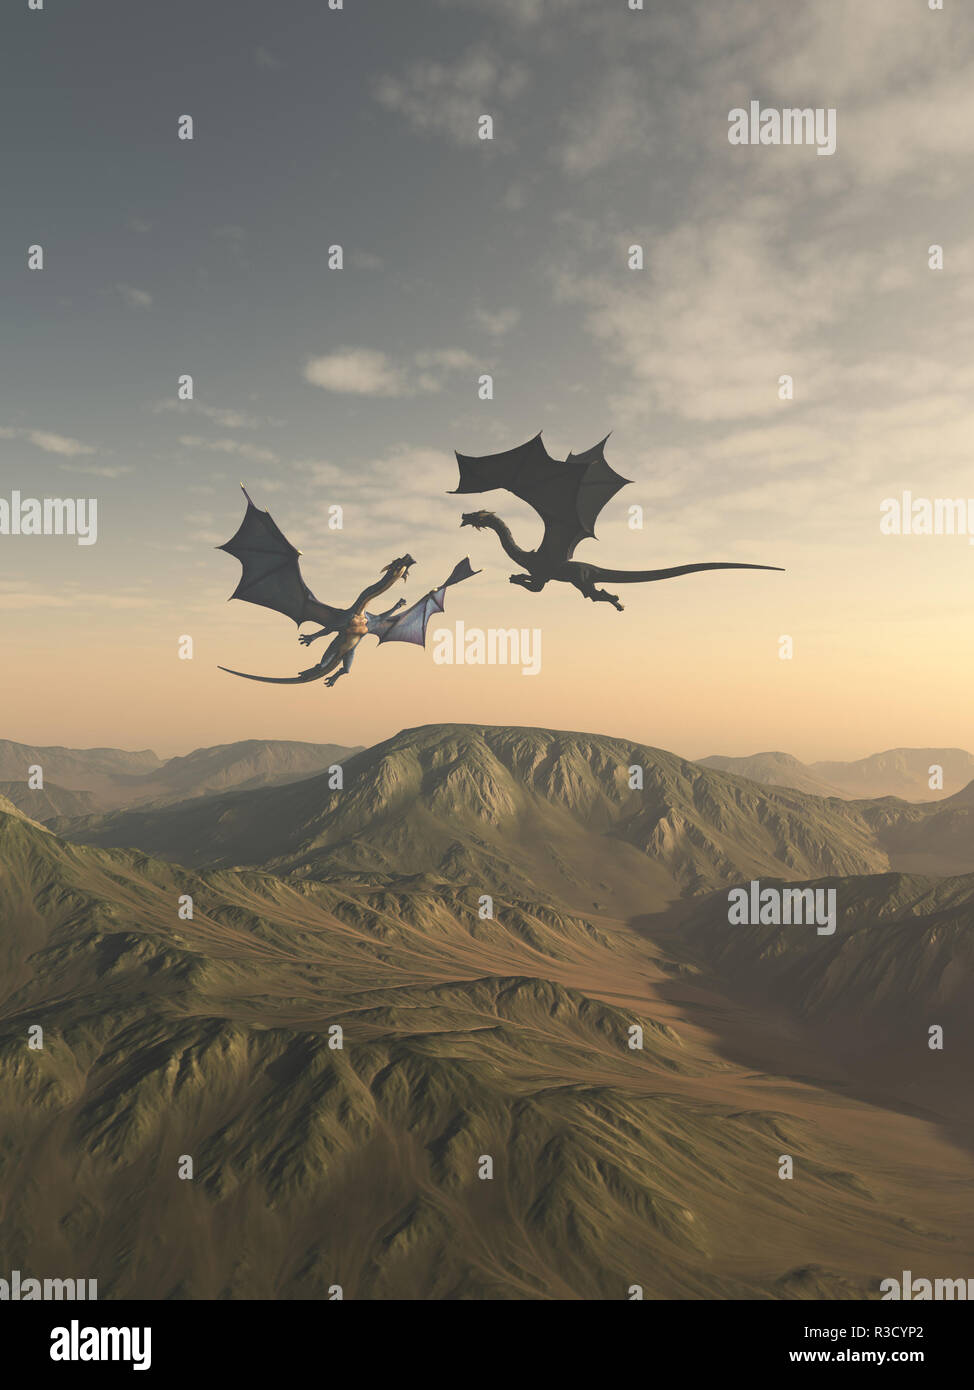 Friendly compagnons Dragon survolant un paysage de montagne Banque D'Images